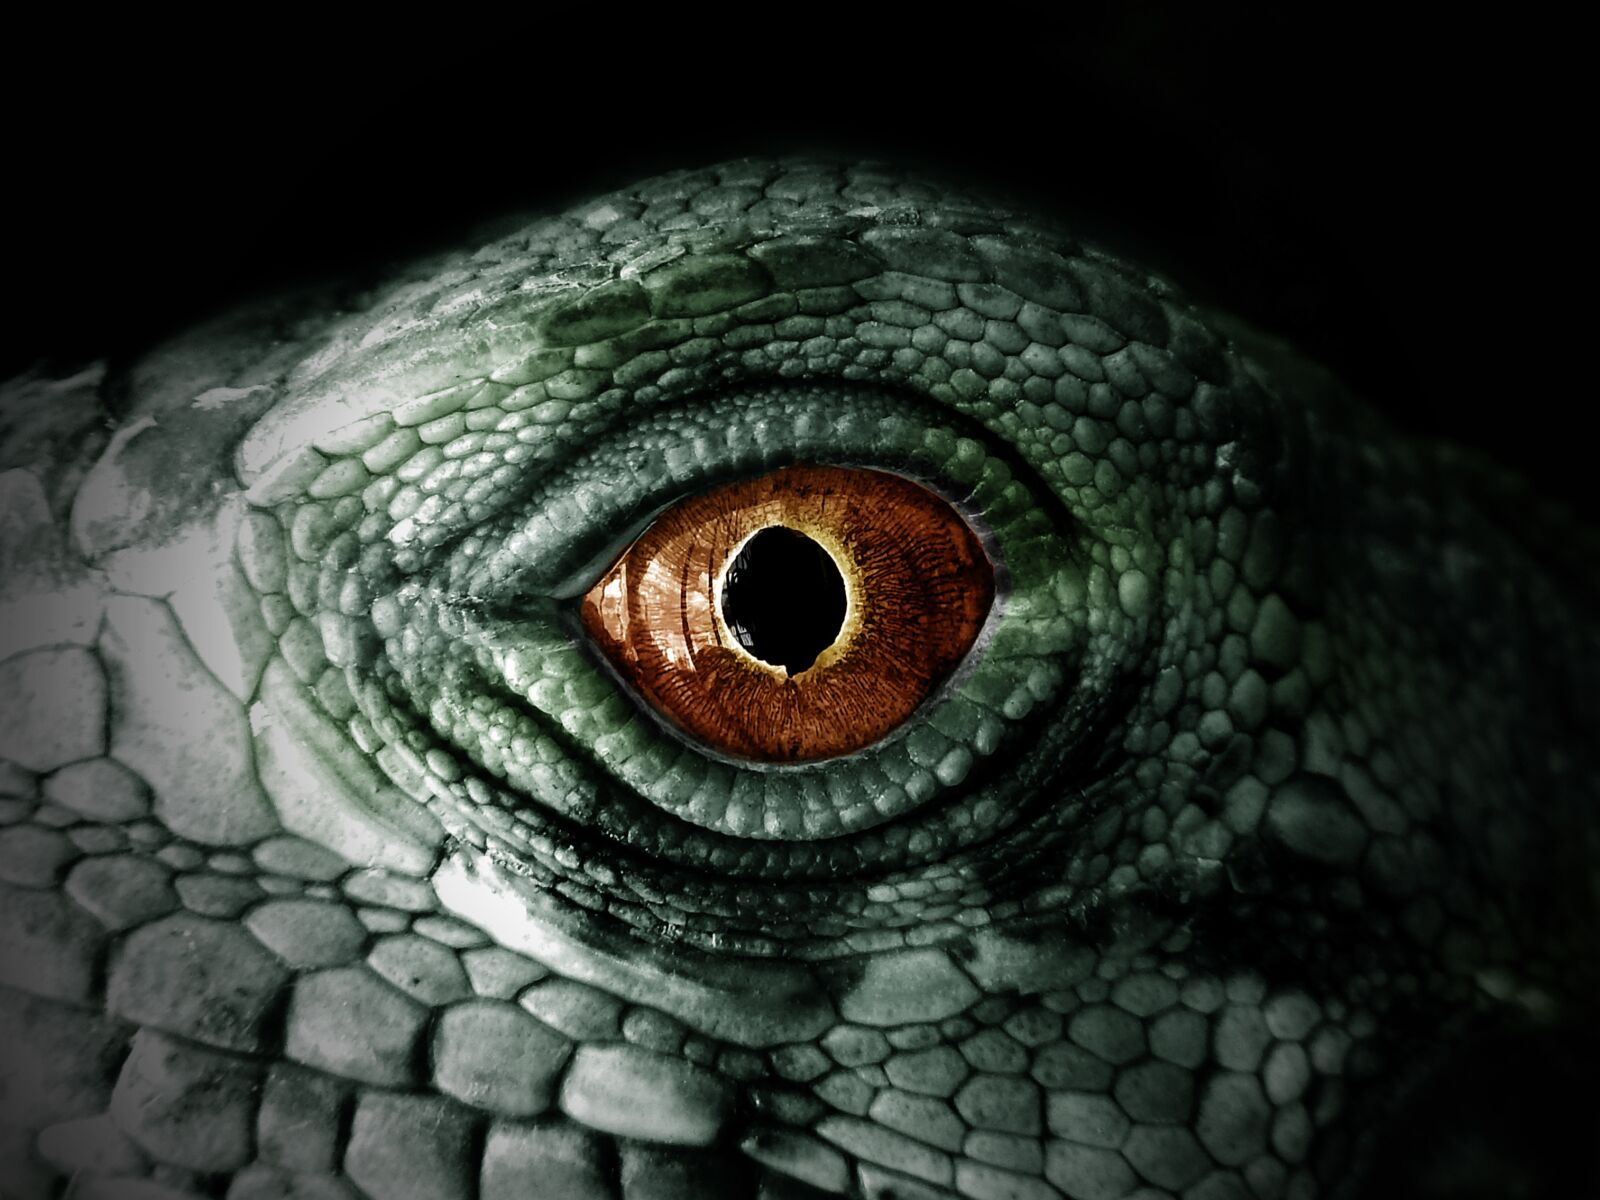 Nikon Coolpix AW110 sample photo. Iguana, reptile, lizard photography